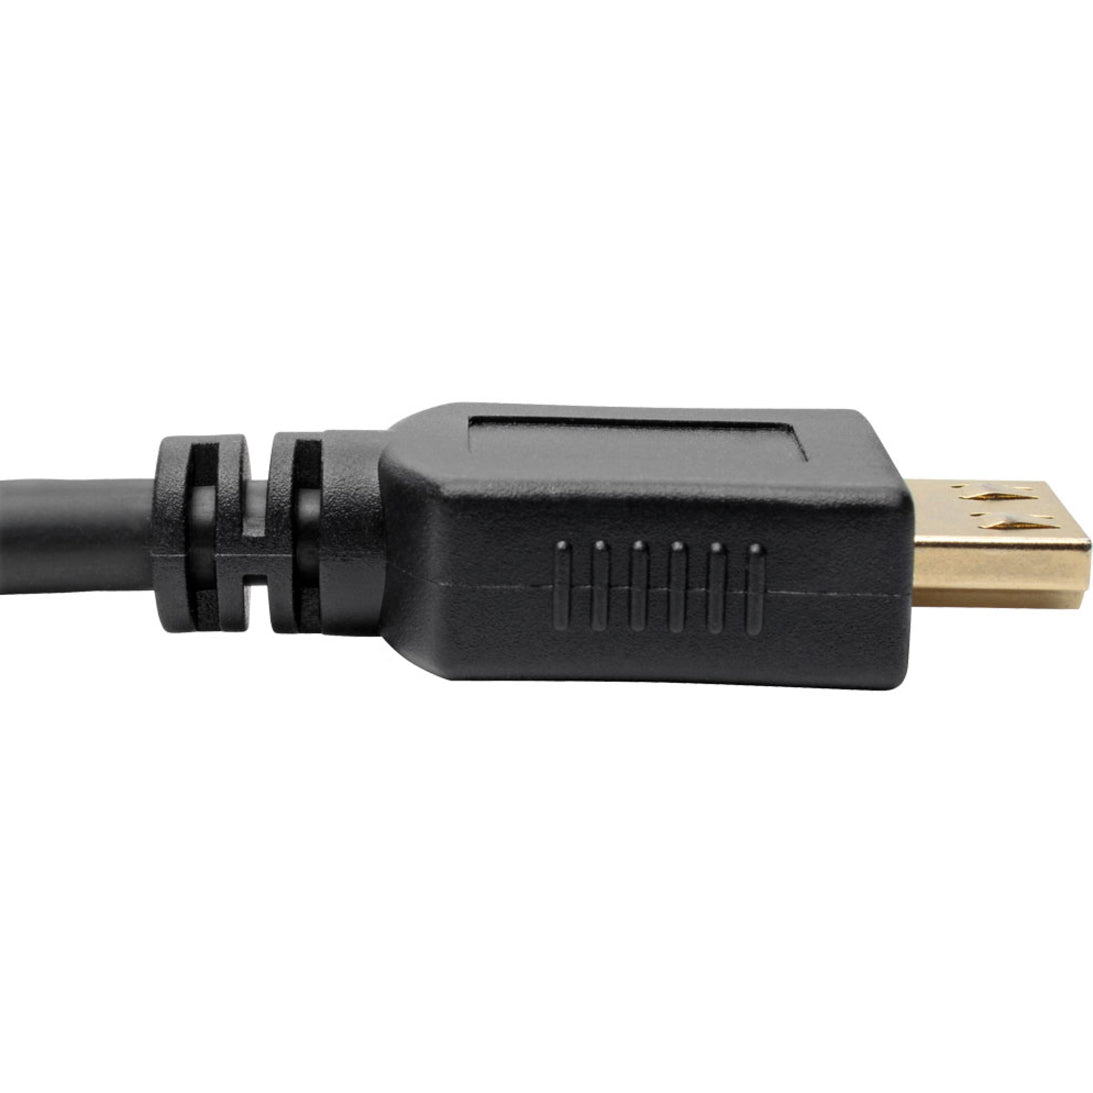 Tripp Lite P568-010-BK-GRP High-Speed HDMI-Kabel 10 ft. mit Griff-Steckern - 4K Schwarz